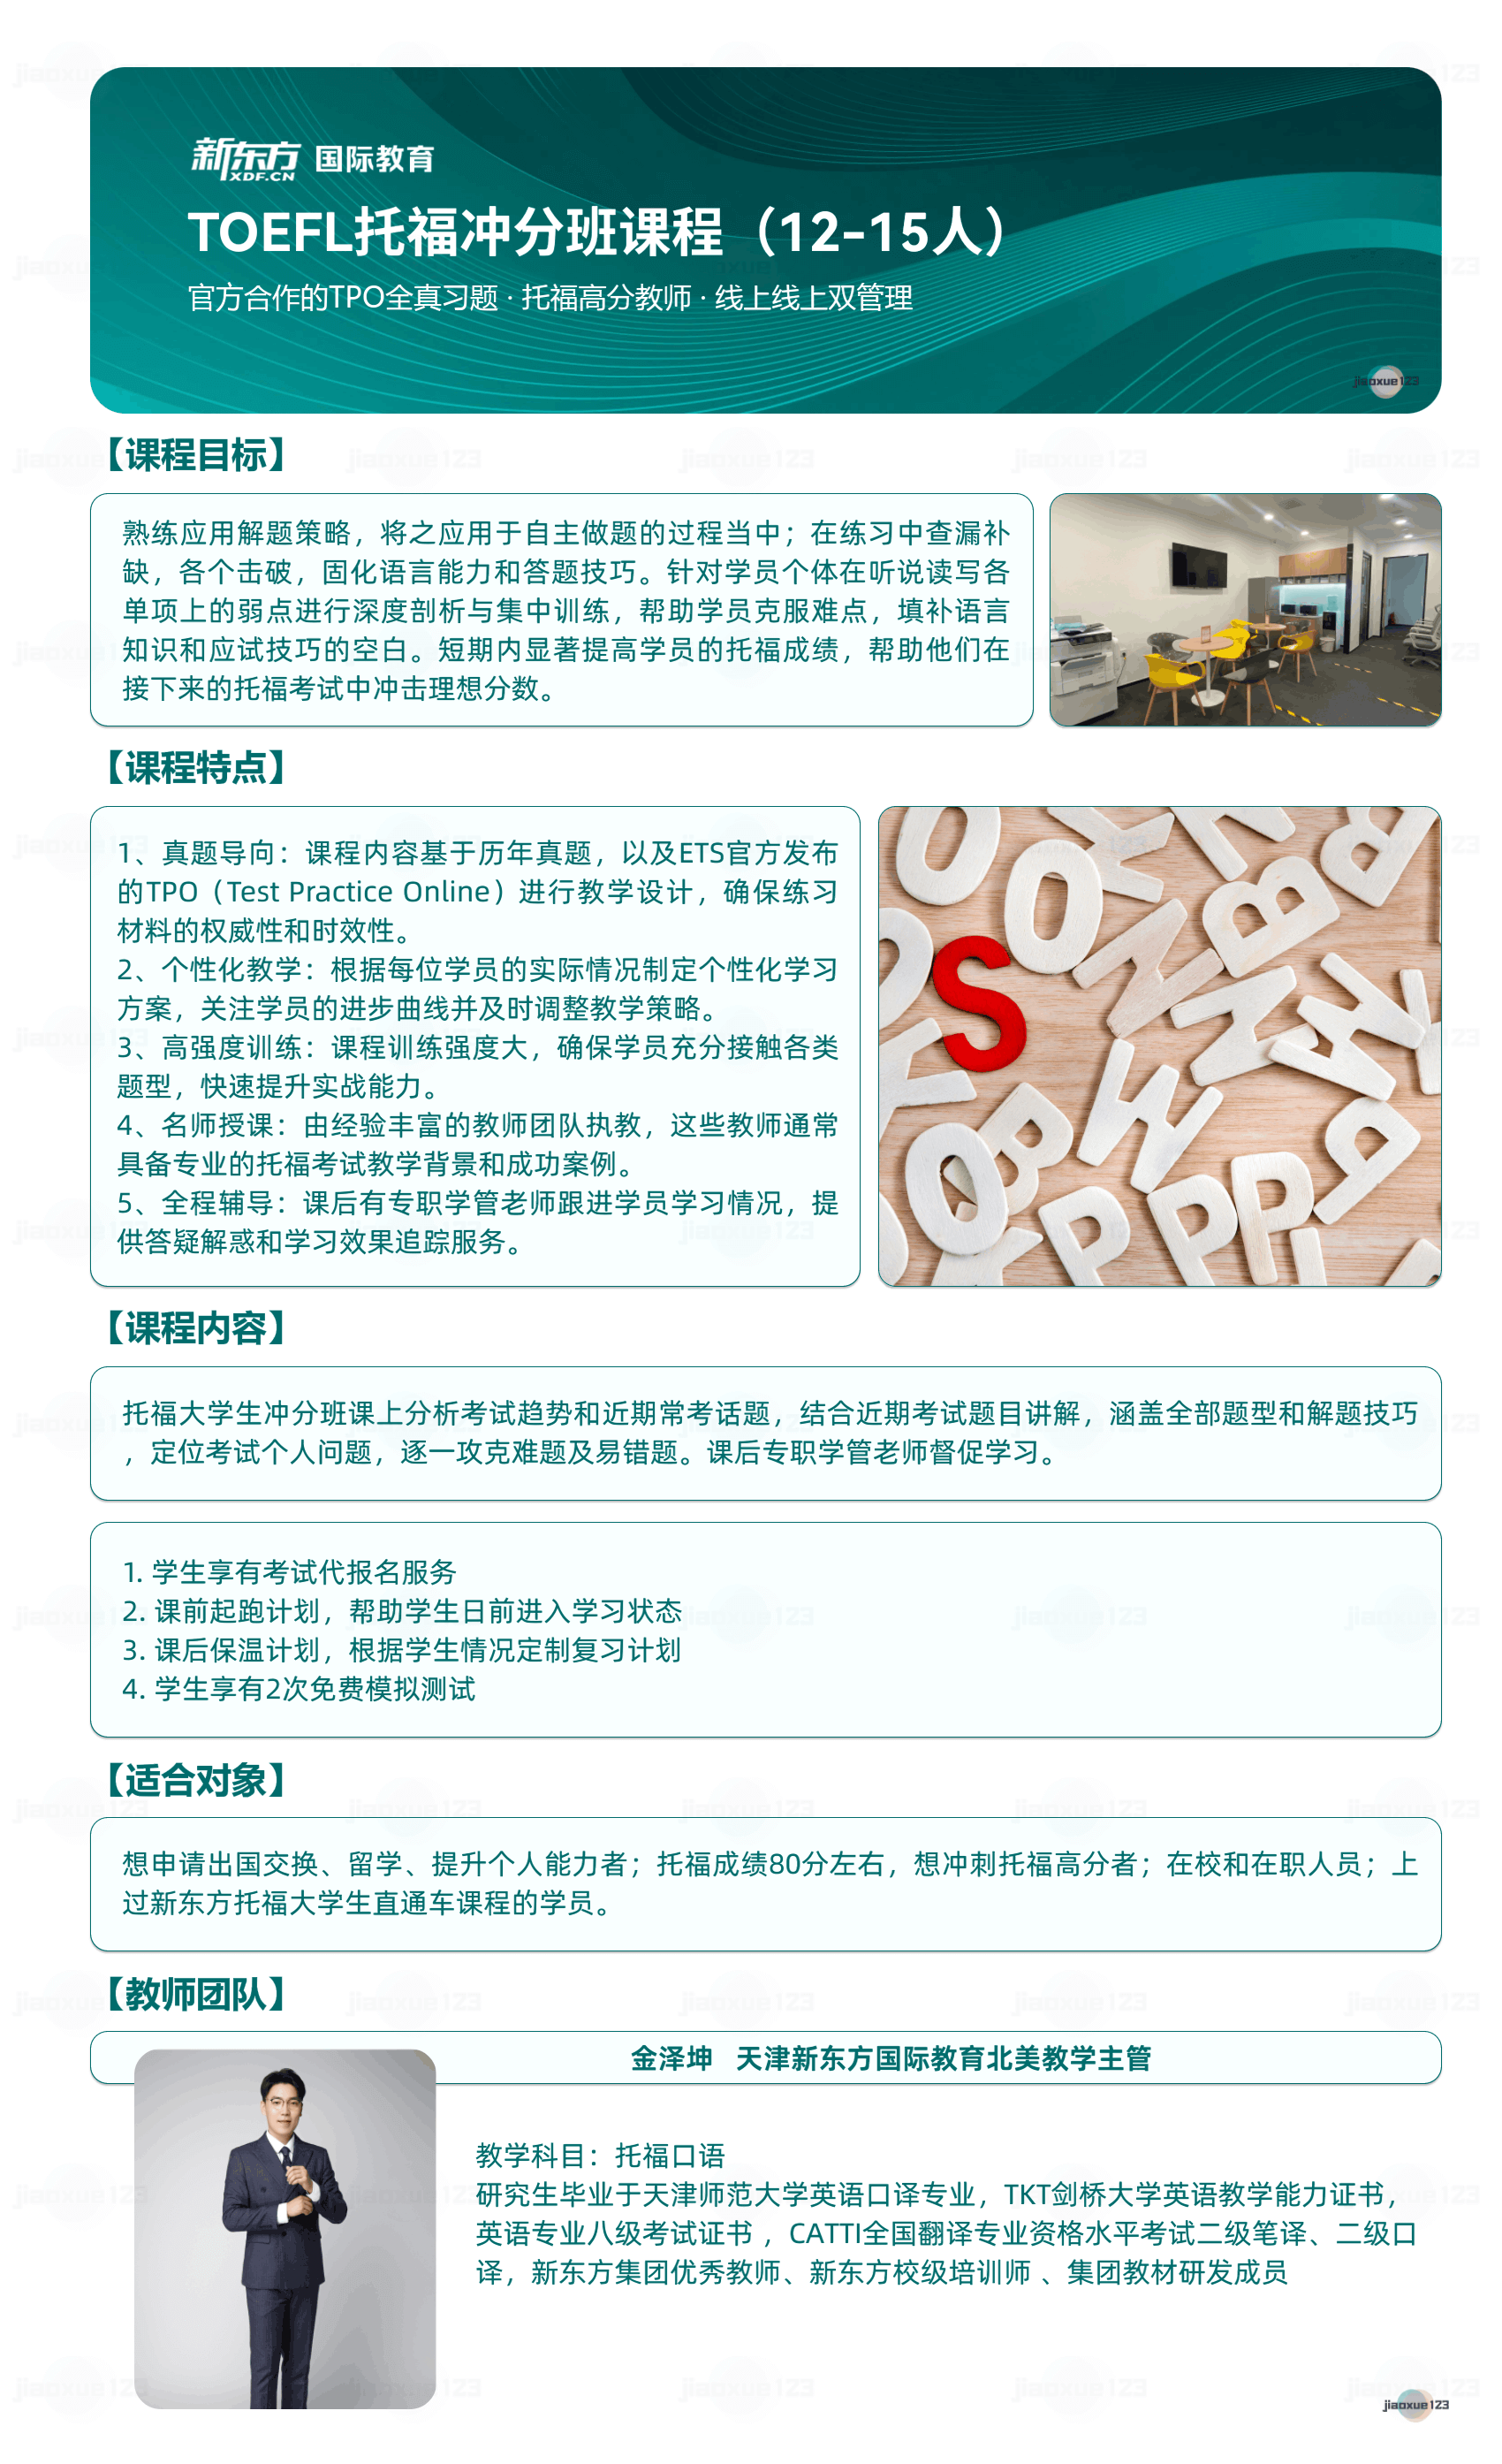 新东方-TOEFL托福冲分班课程详情